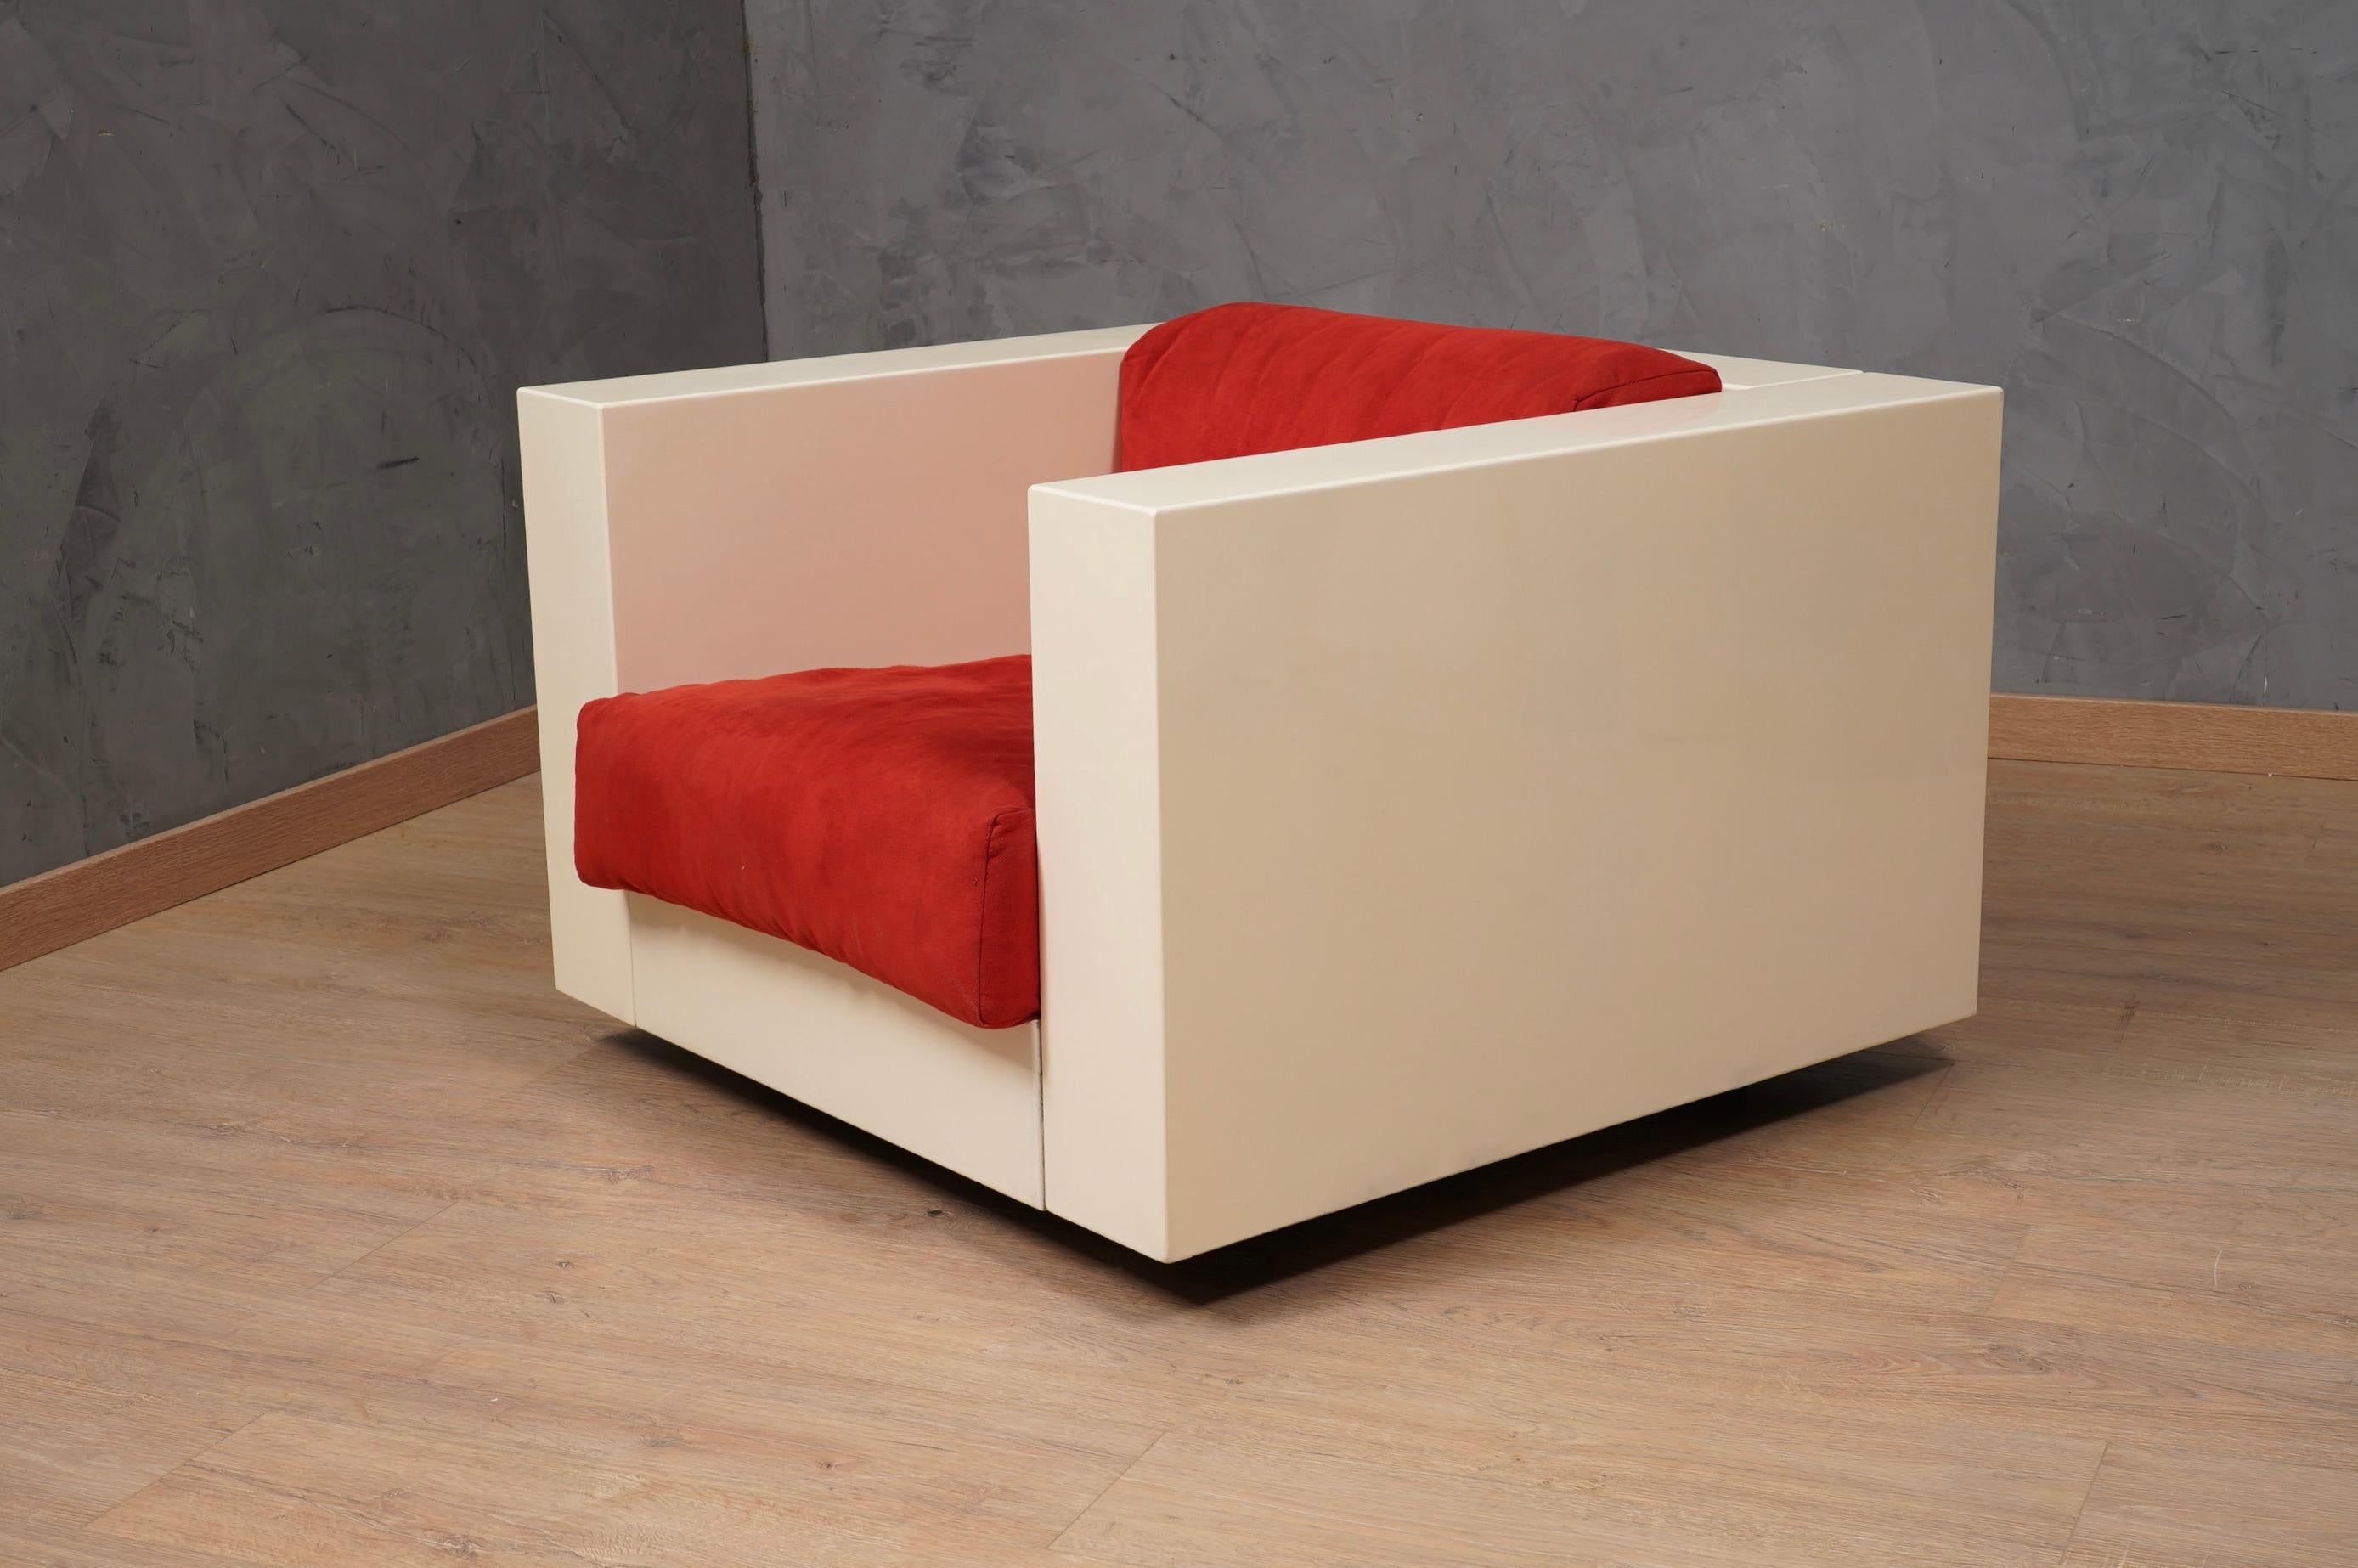 Historischer Sessel Mod. Saratoga aus weiß lackiertem Holz mit Kissen aus schönem rot-violettem Stoff. Wenn man eine Sache entwerfen kann, kann man alles entwerfen, sagte Massimo Vignelli (1931-2014). Produziert von Poltronova.

Der Sessel besteht